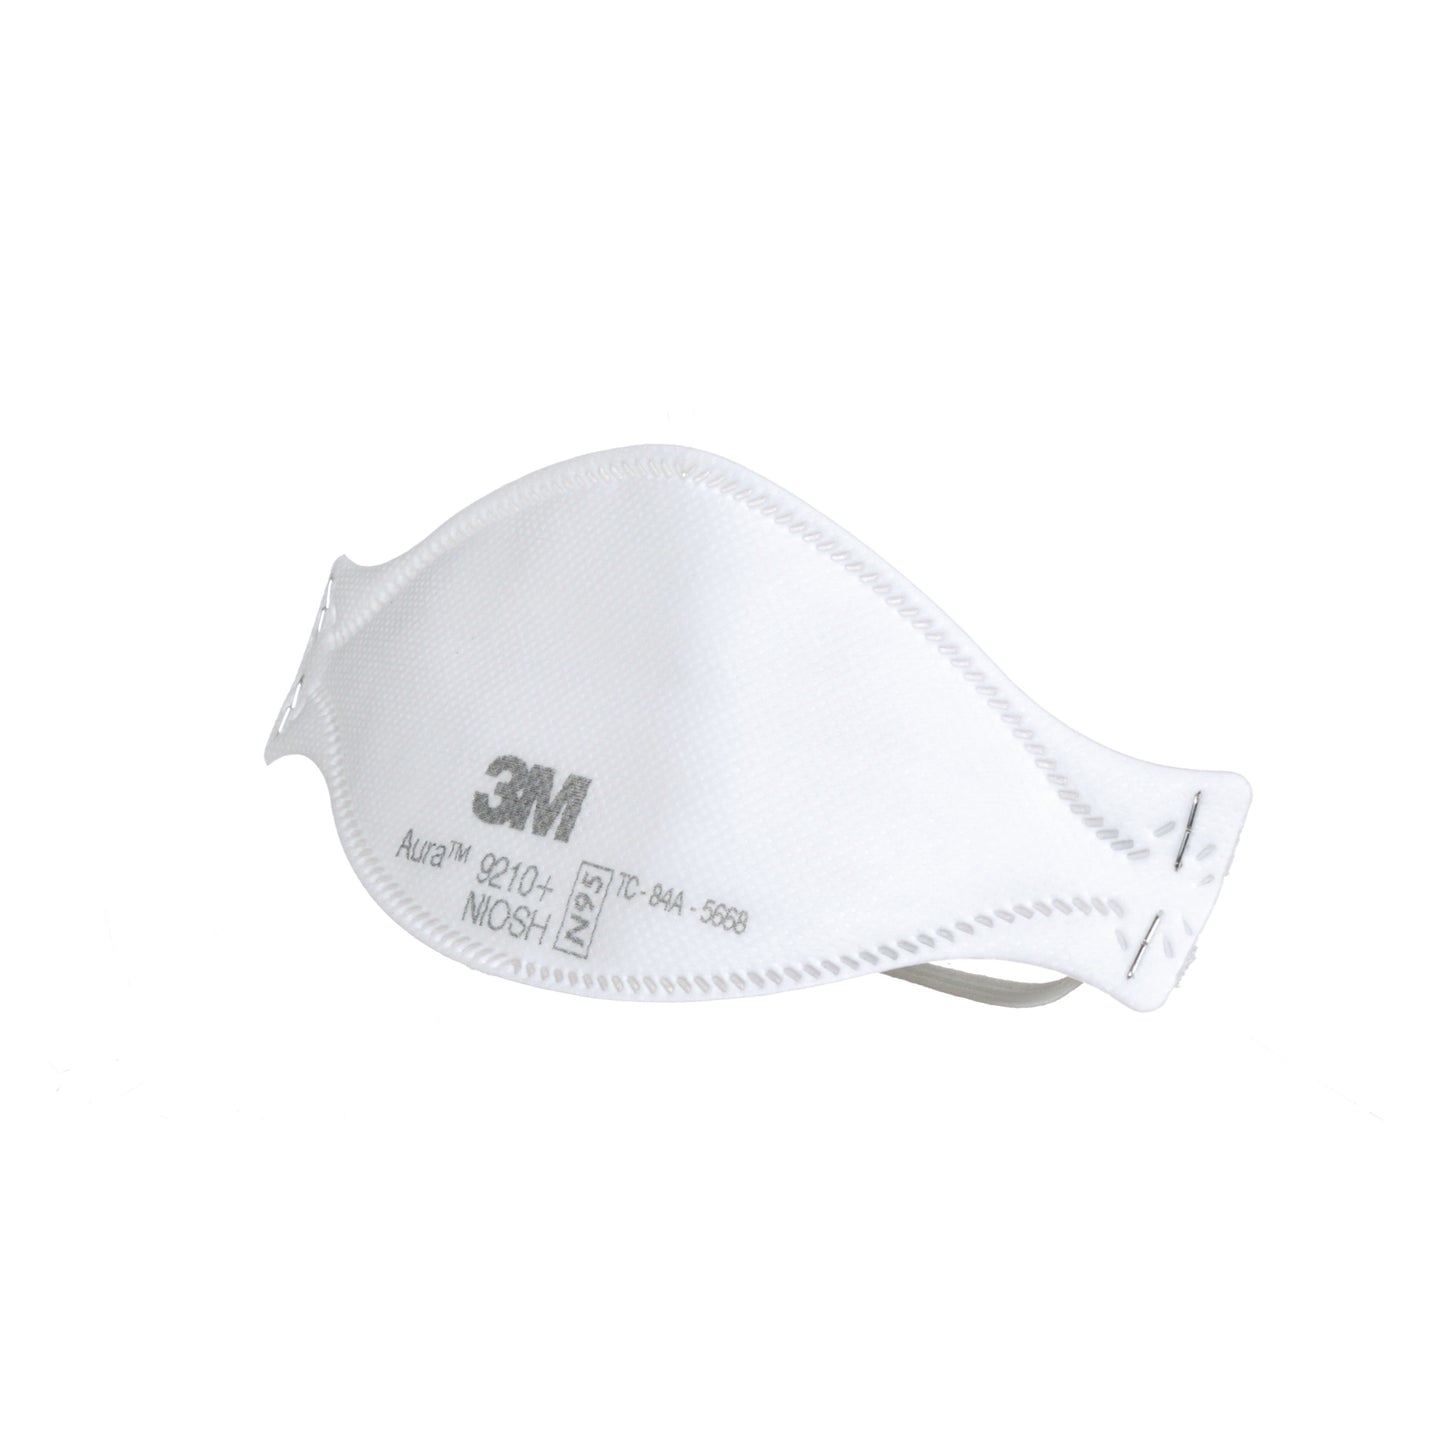 3M Aura 9210+ NIOSH N95 Respirator Mask - Made in USA